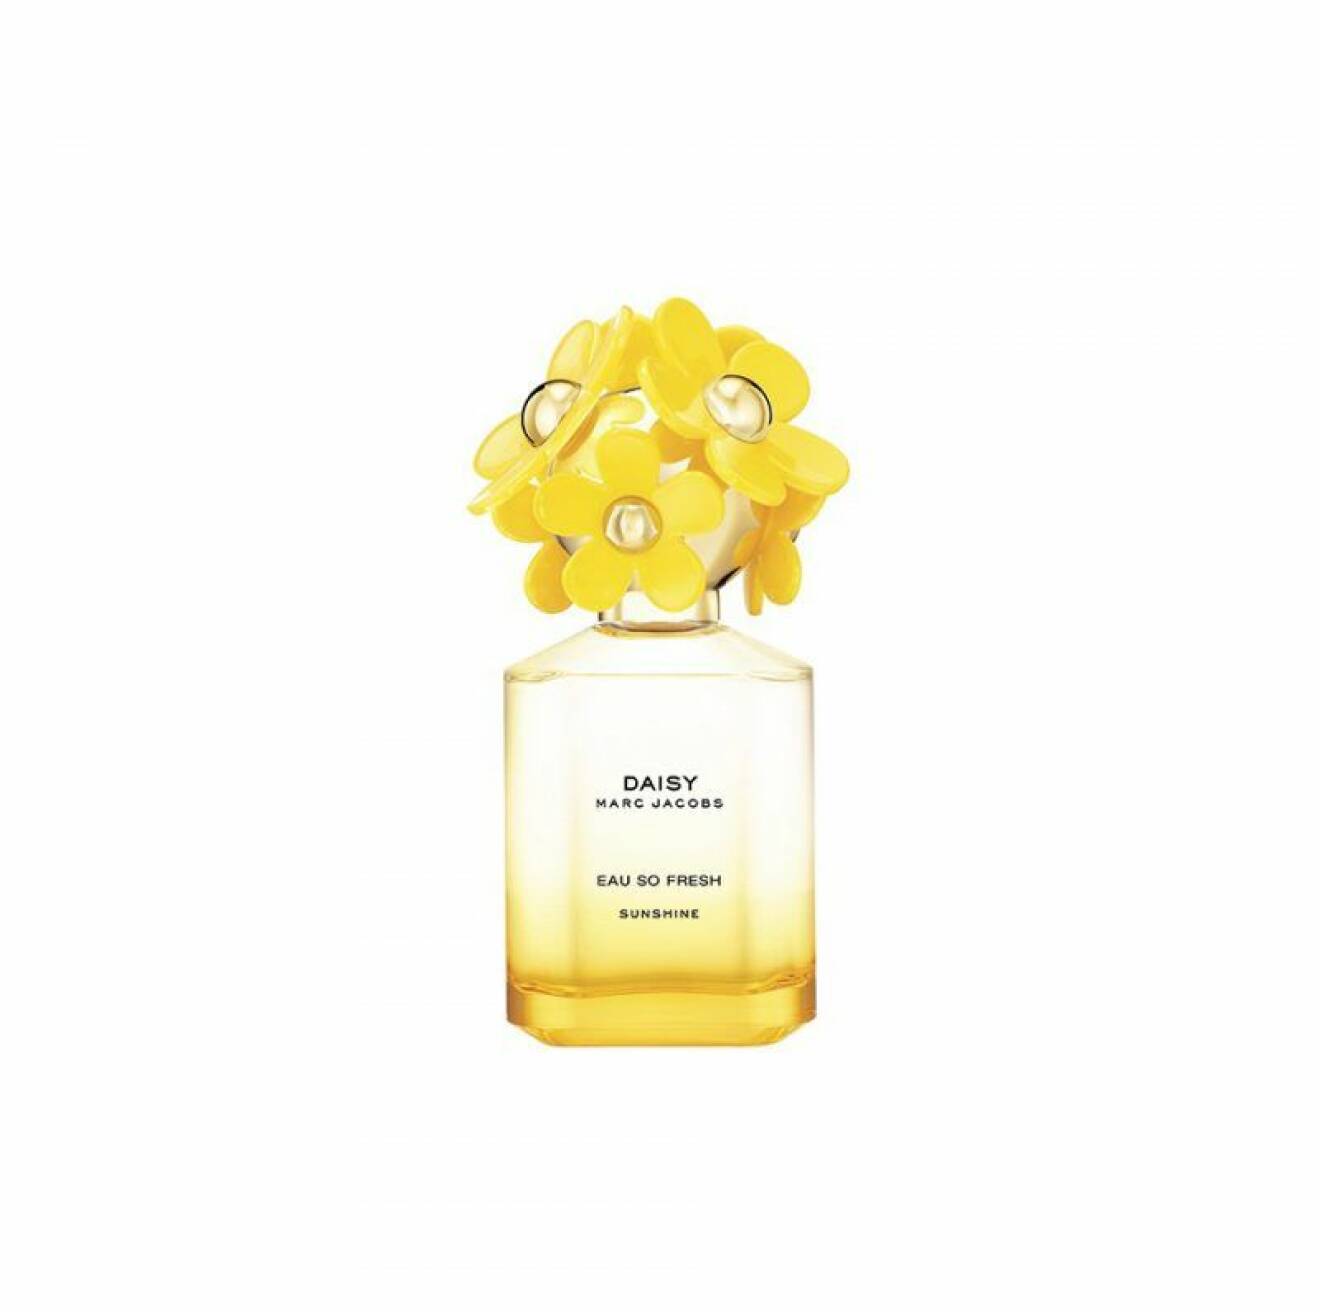 Parfymen Daisy sunshine från Marc Jacobs